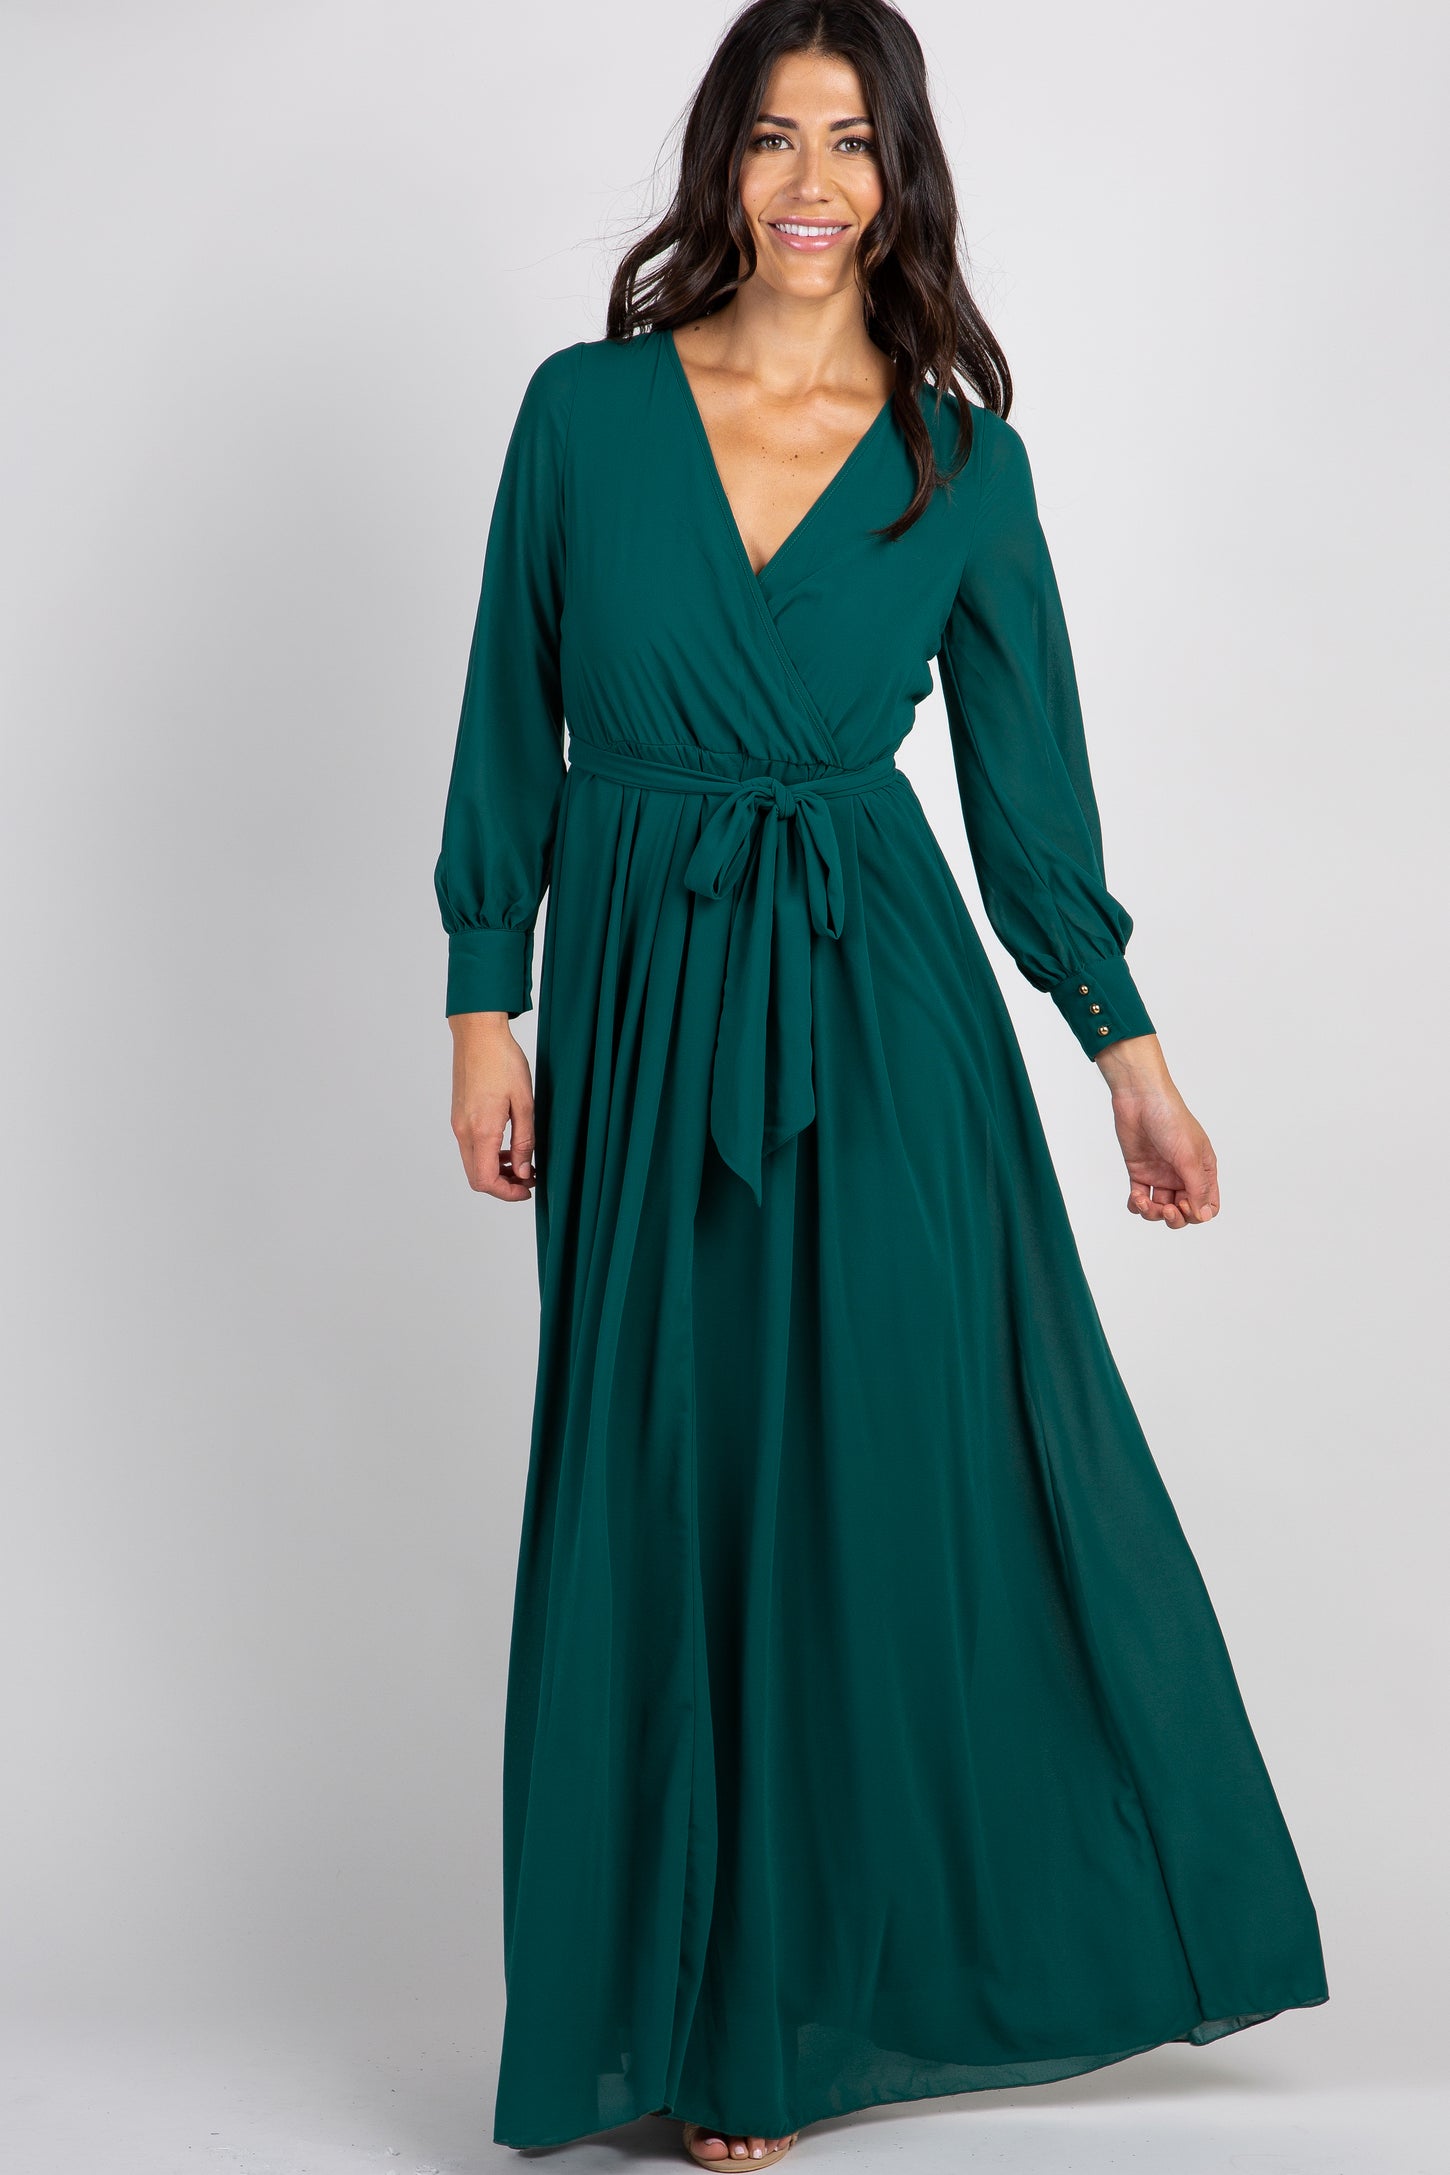 Green Chiffon Long Sleeve Pleated Maxi Dress– PinkBlush